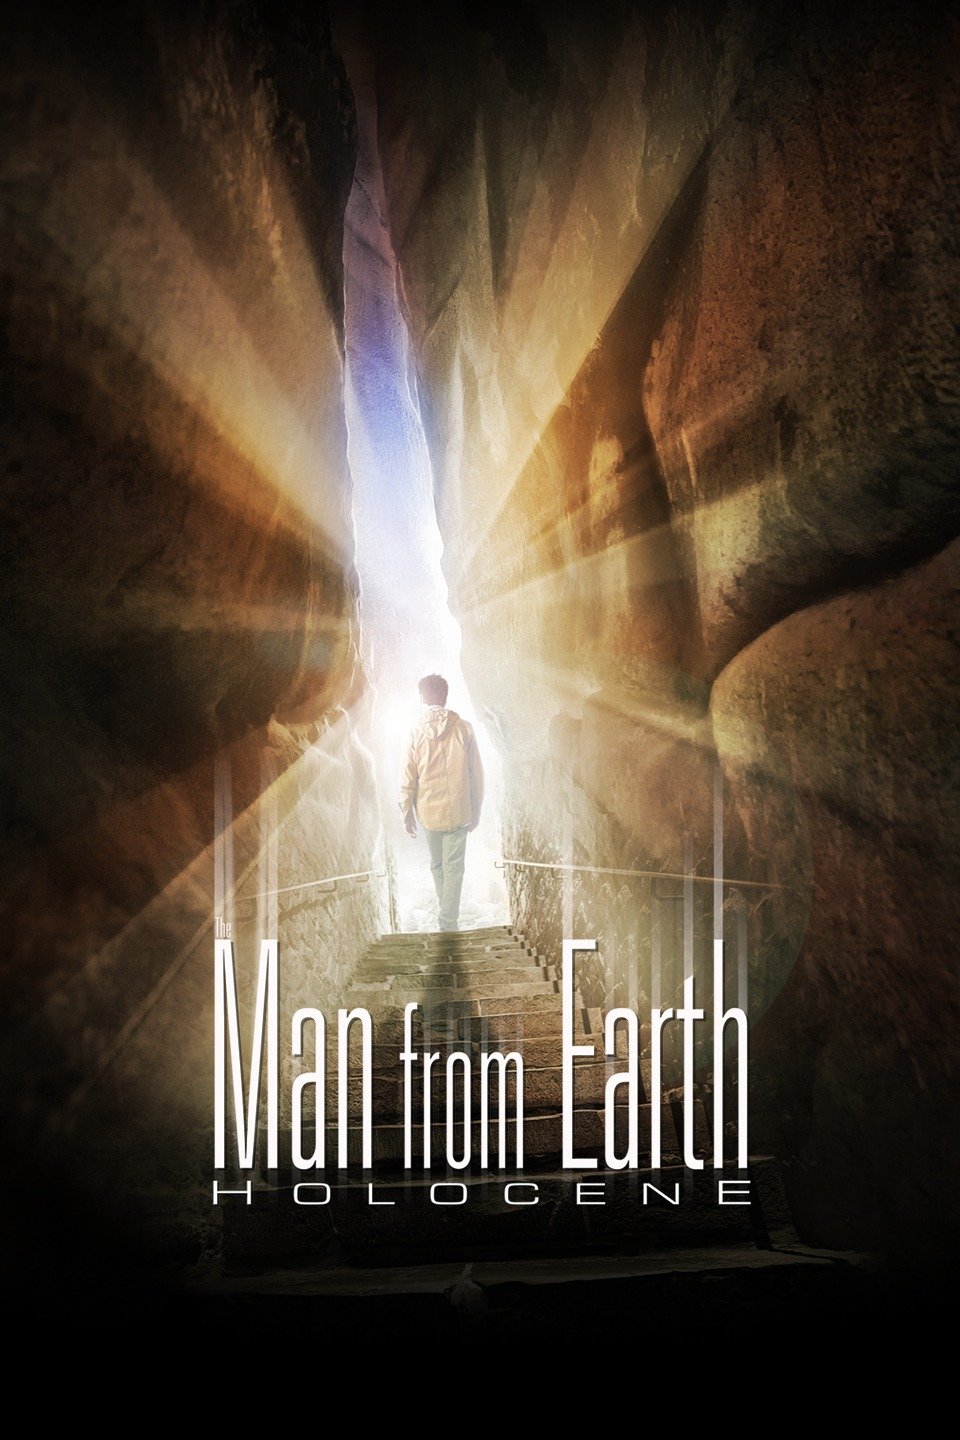 [ฝรั่ง] The Man from Earth: Holocene (2017) [1080p] [พากย์อังกฤษ] [Blu-ray.H.264] [Soundtrack – บรรยายไทย] [เสียงอังกฤษ + ซับไทย] [ONE2UP]